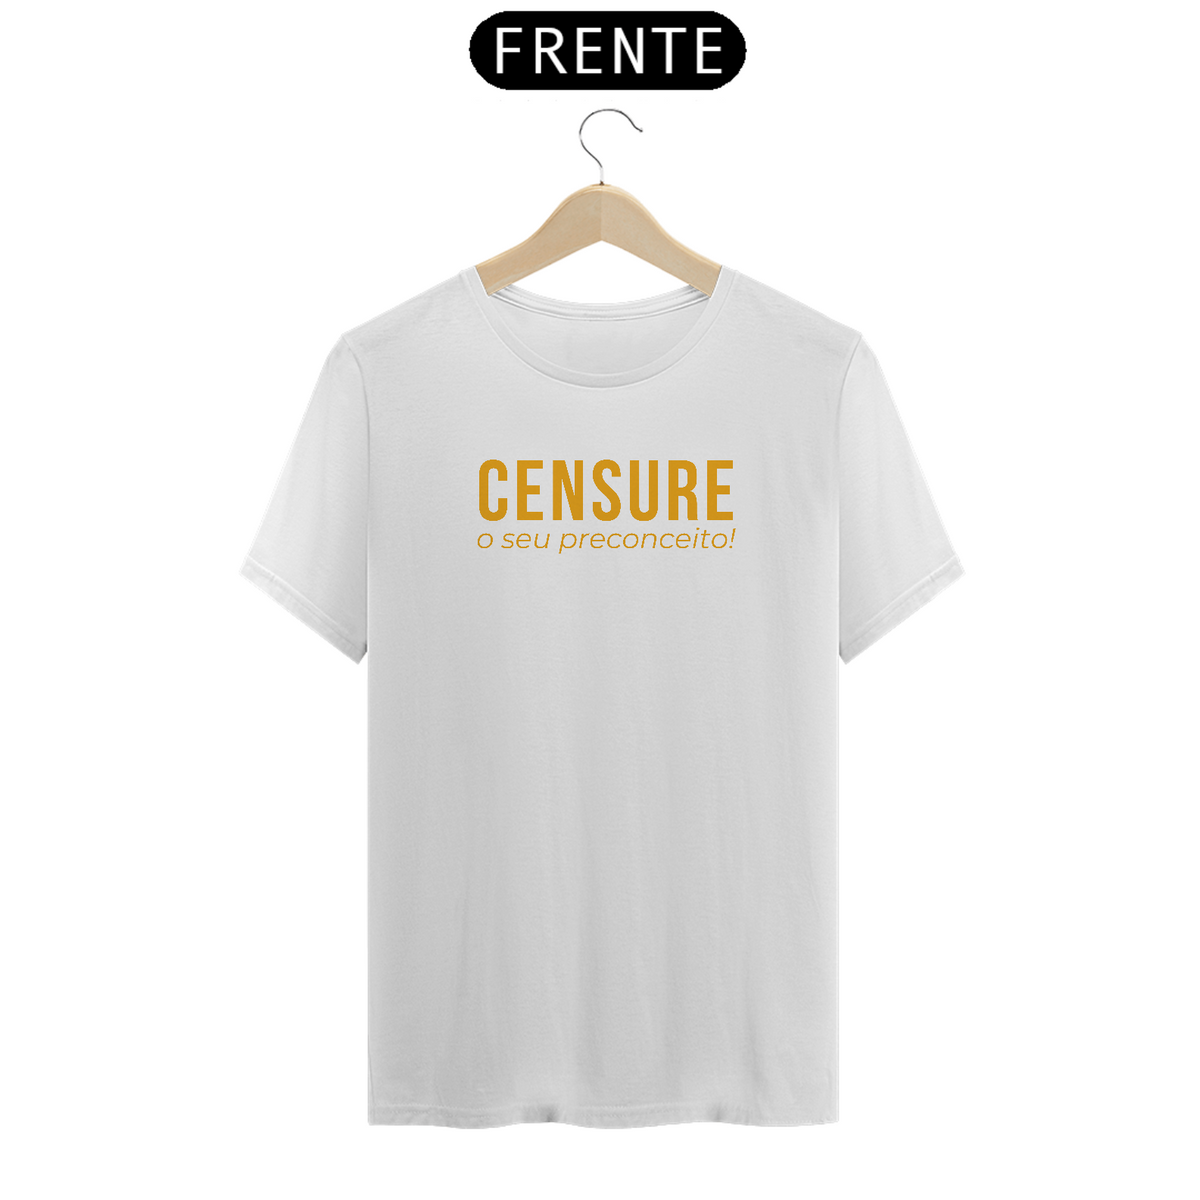 Nome do produto: Camiseta Censure o seu preconceito!